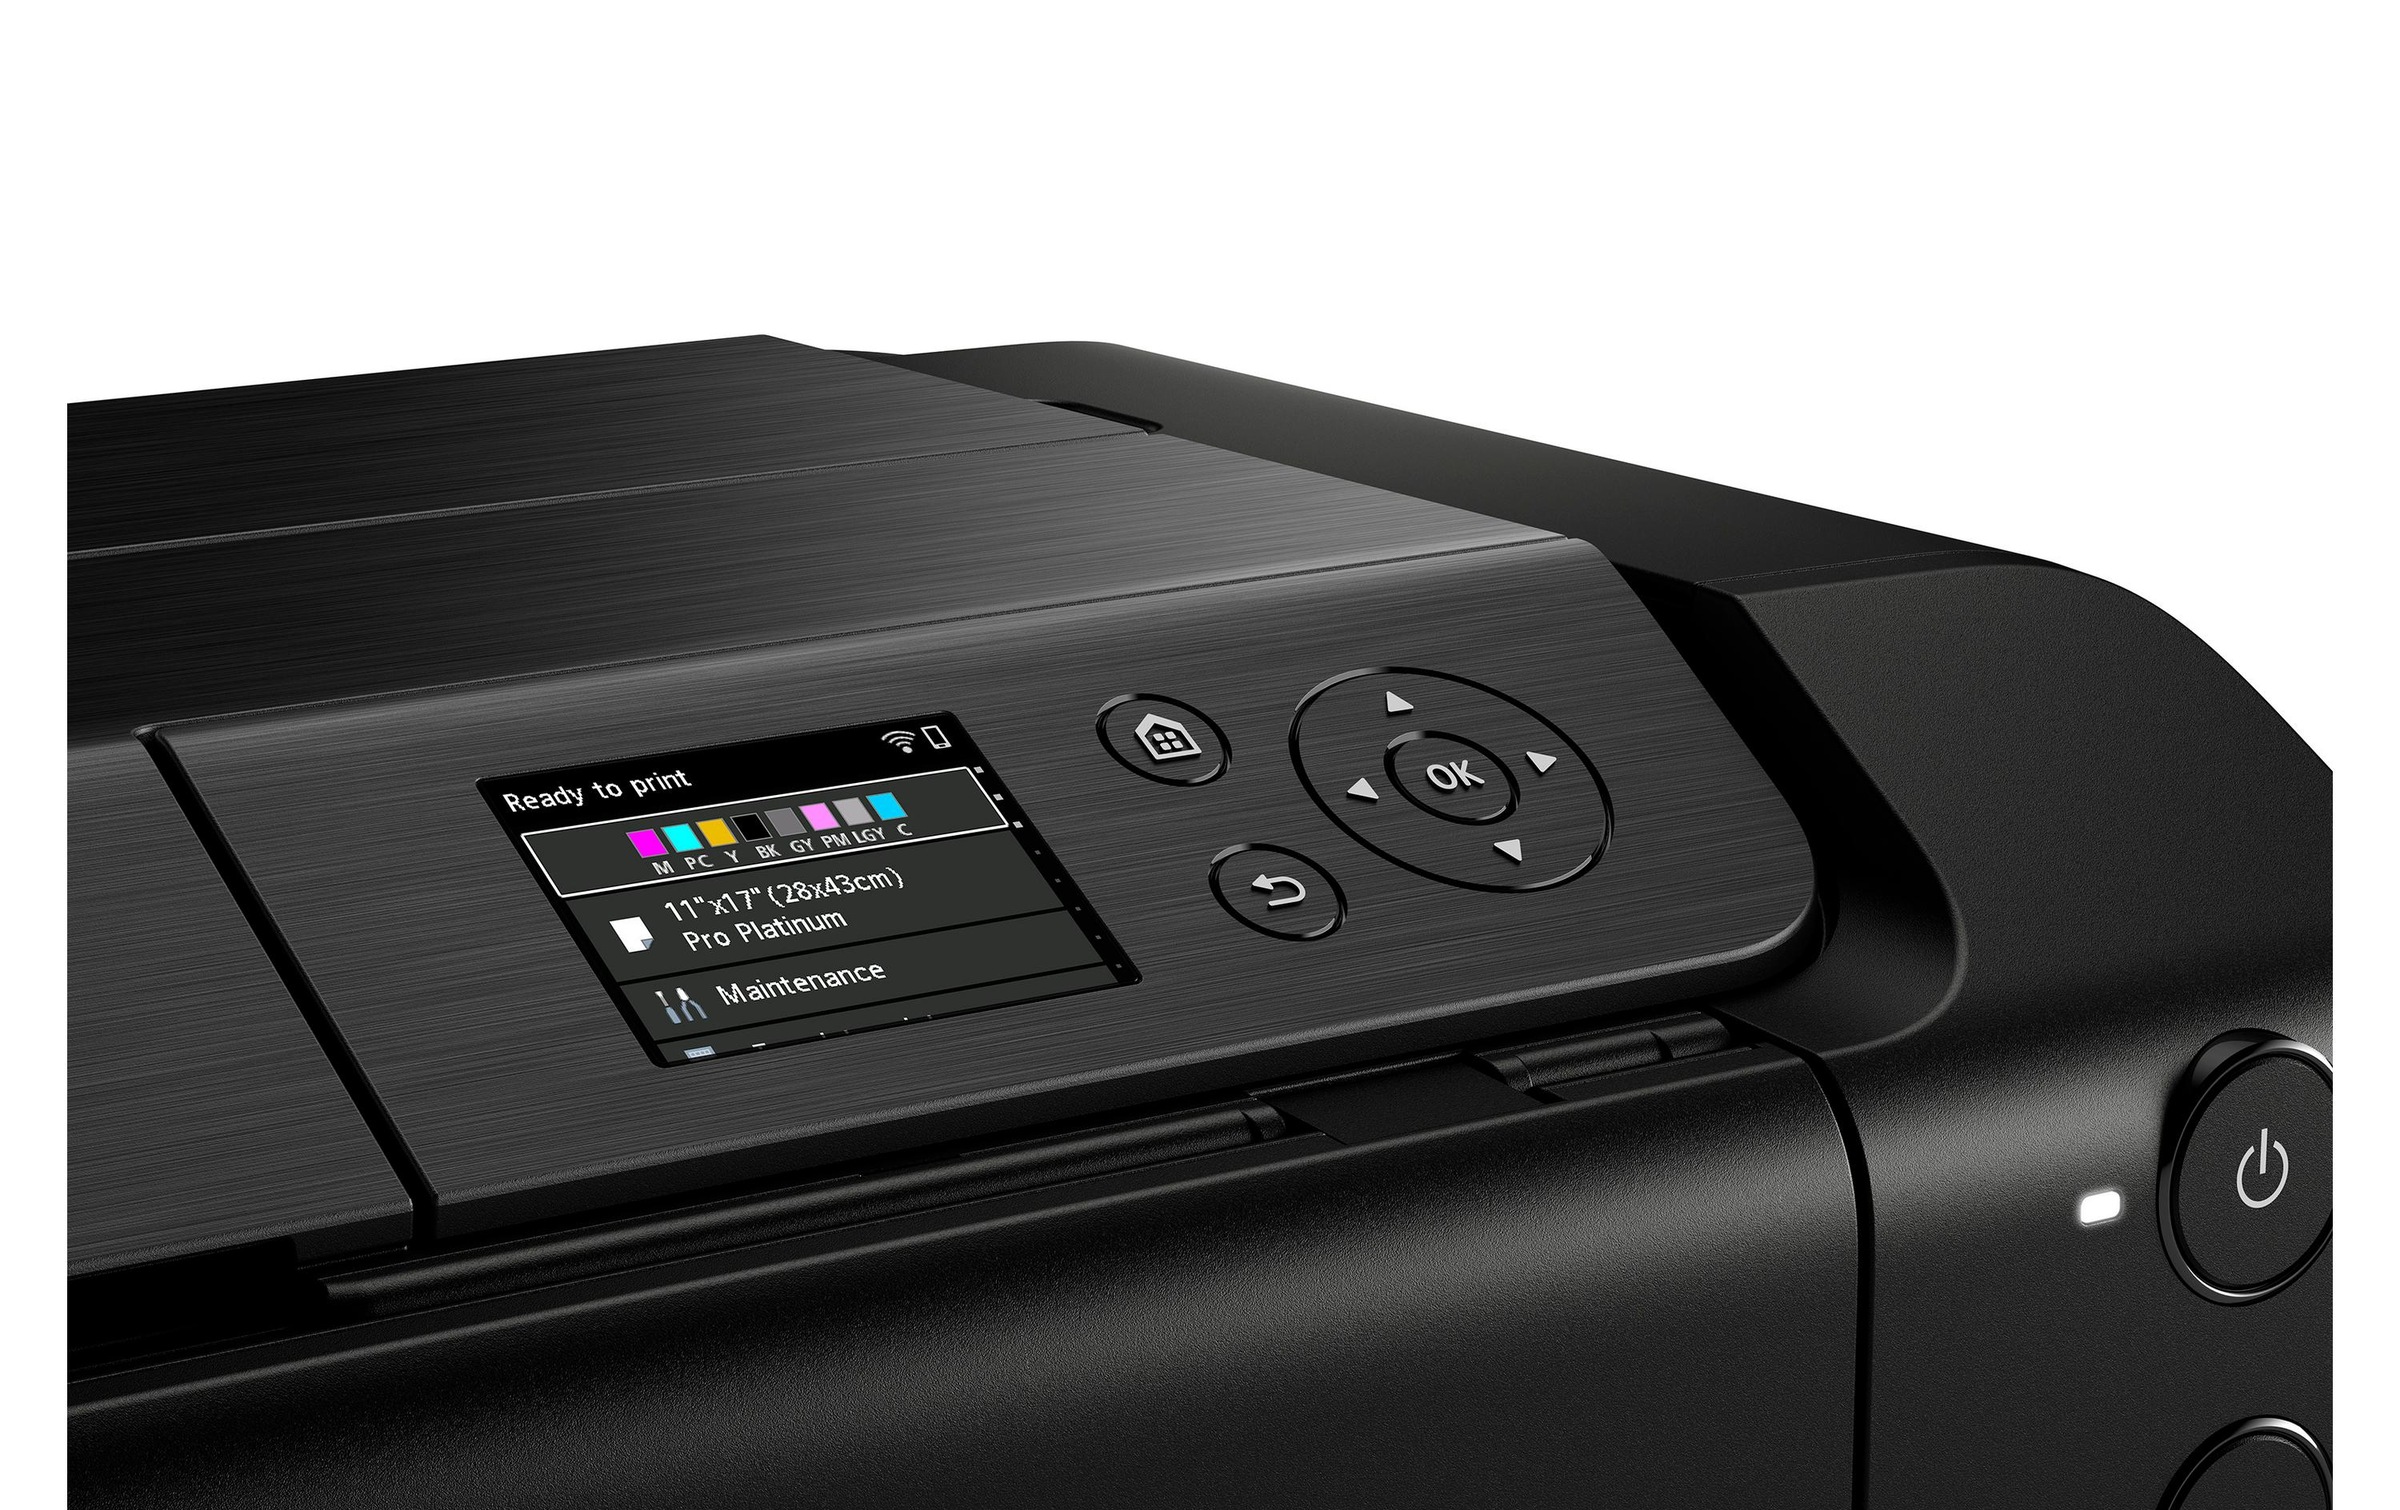 Canon Fotodrucker »Pixma Pro-200, A3+, WLAN/LAN/USB2.0«